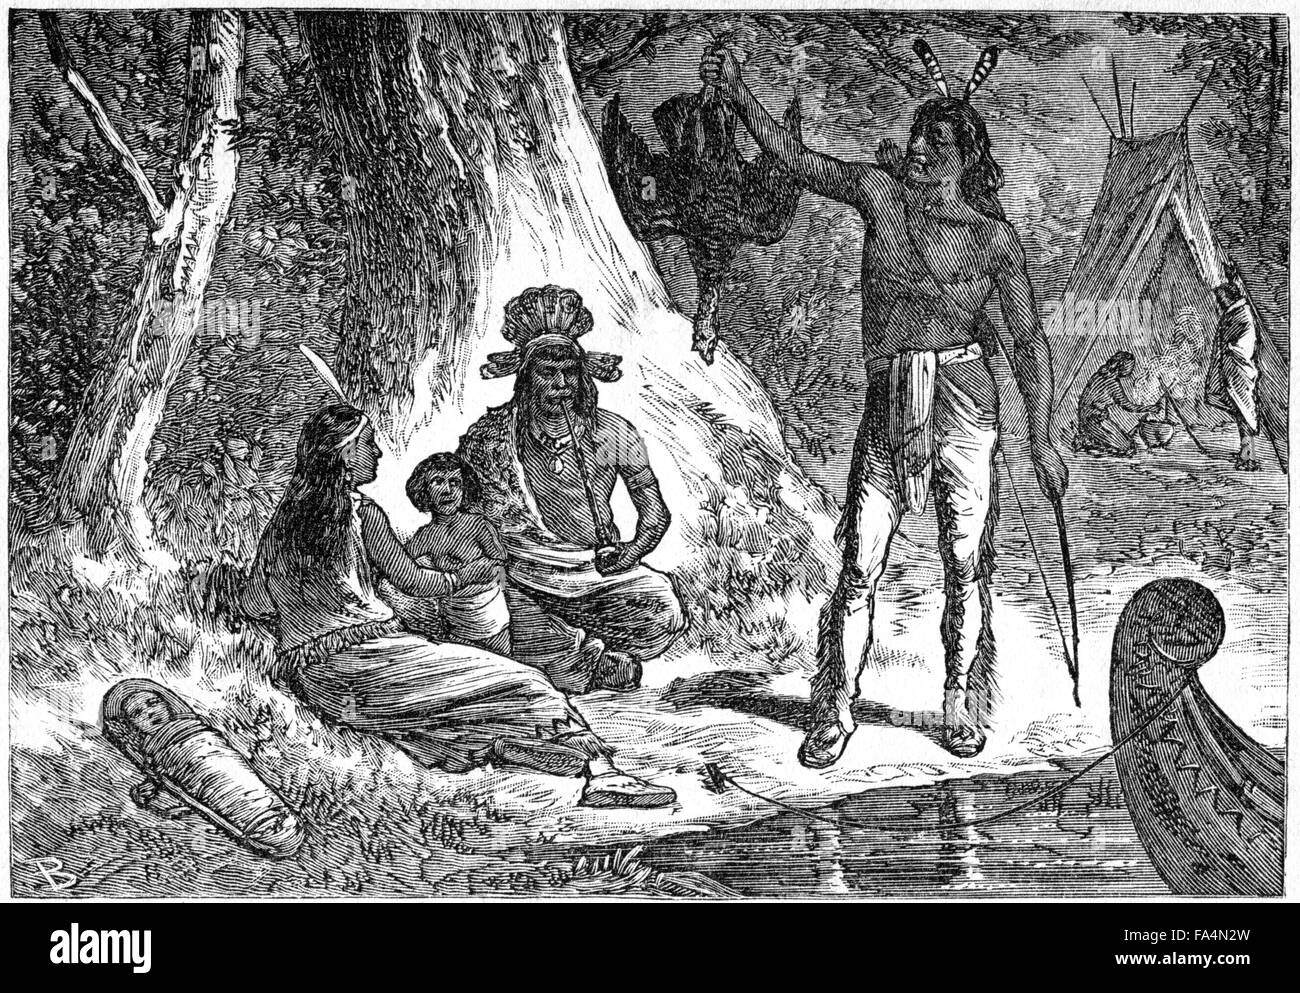 "Indisches Leben in ihre gebürtige Wälder", Buch Illustration aus "Indische Schrecken oder Massaker der roten Männer" von Henry Davenport Northrop, 1891 Stockfoto